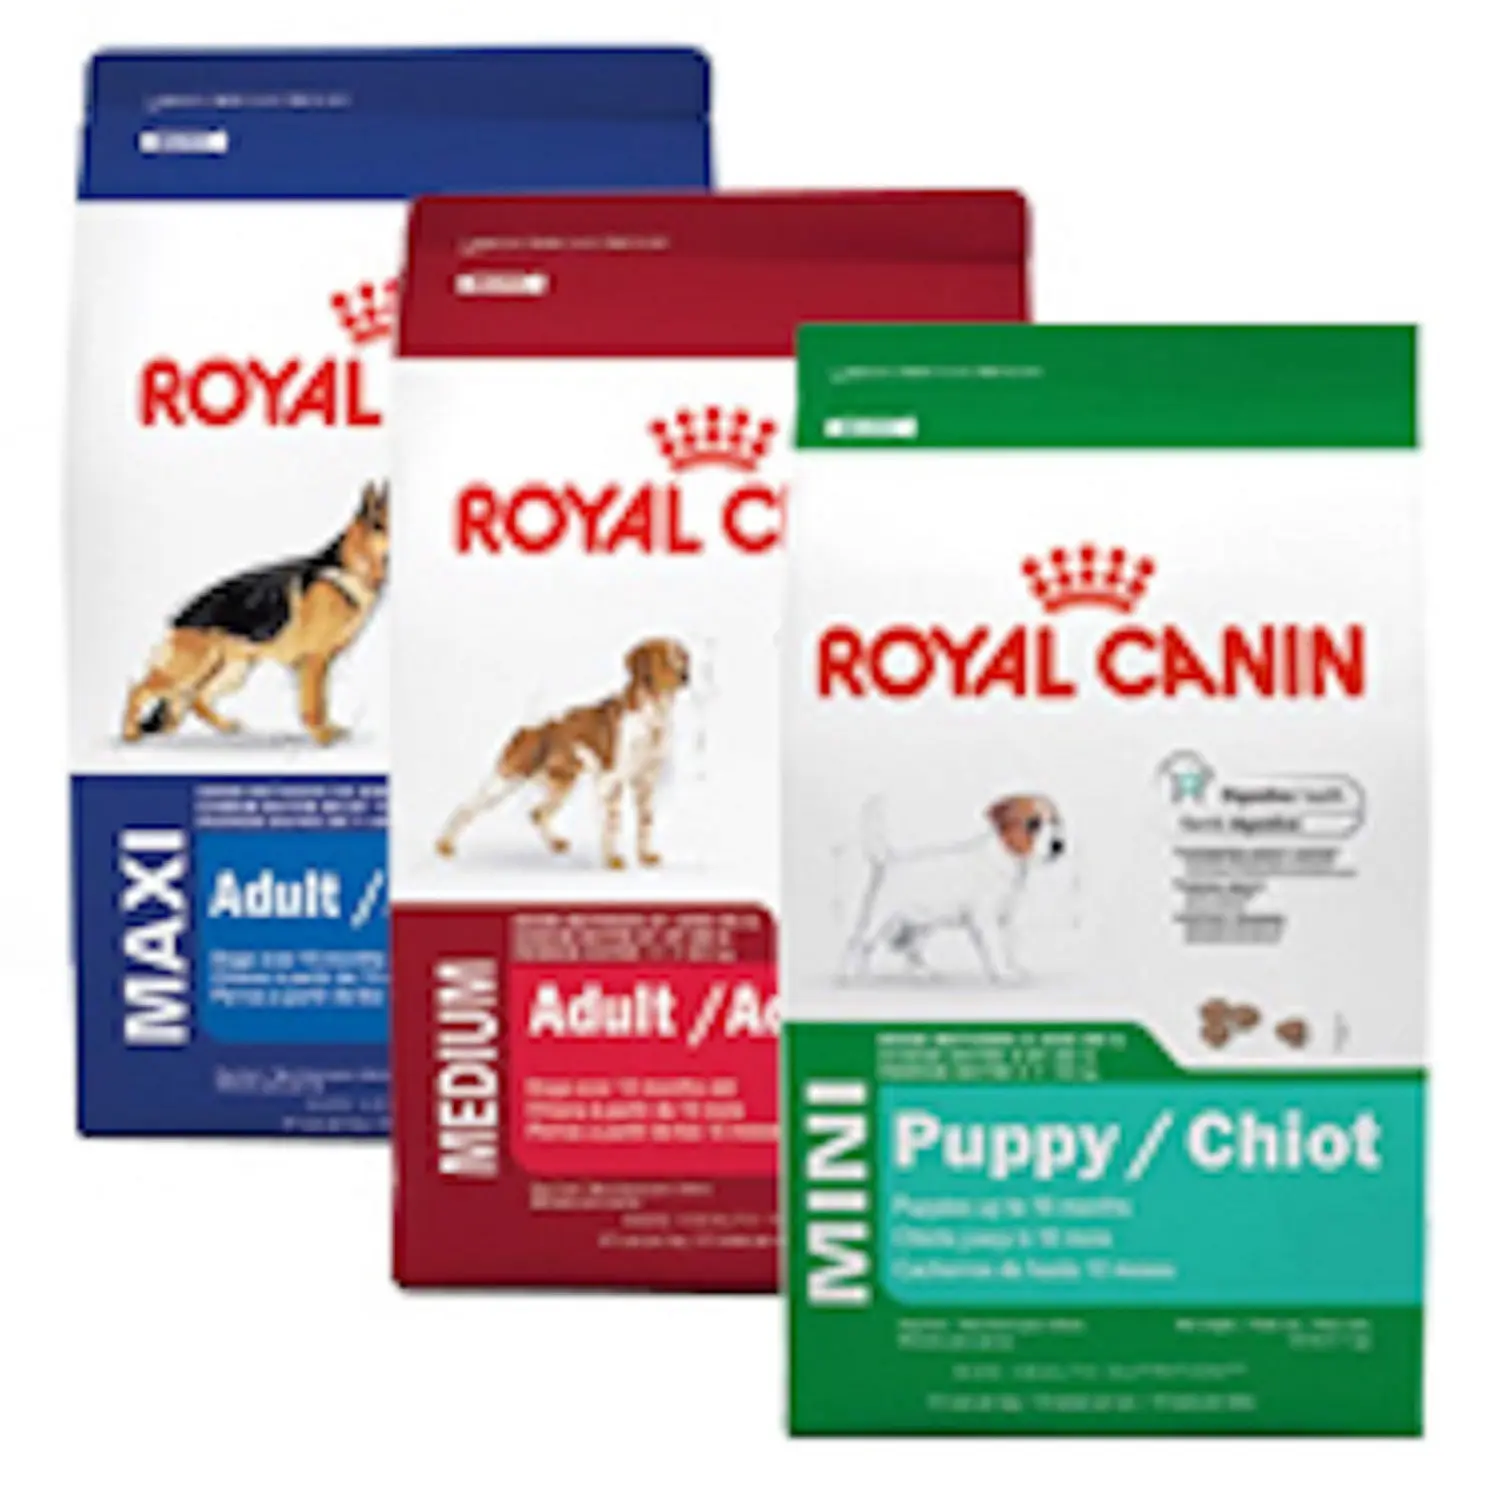 Cibo per cani ROYAL CANIN all'ingrosso naturale originale/cibo per gatti/cibo per animali di migliore qualità ROYAL CANIN